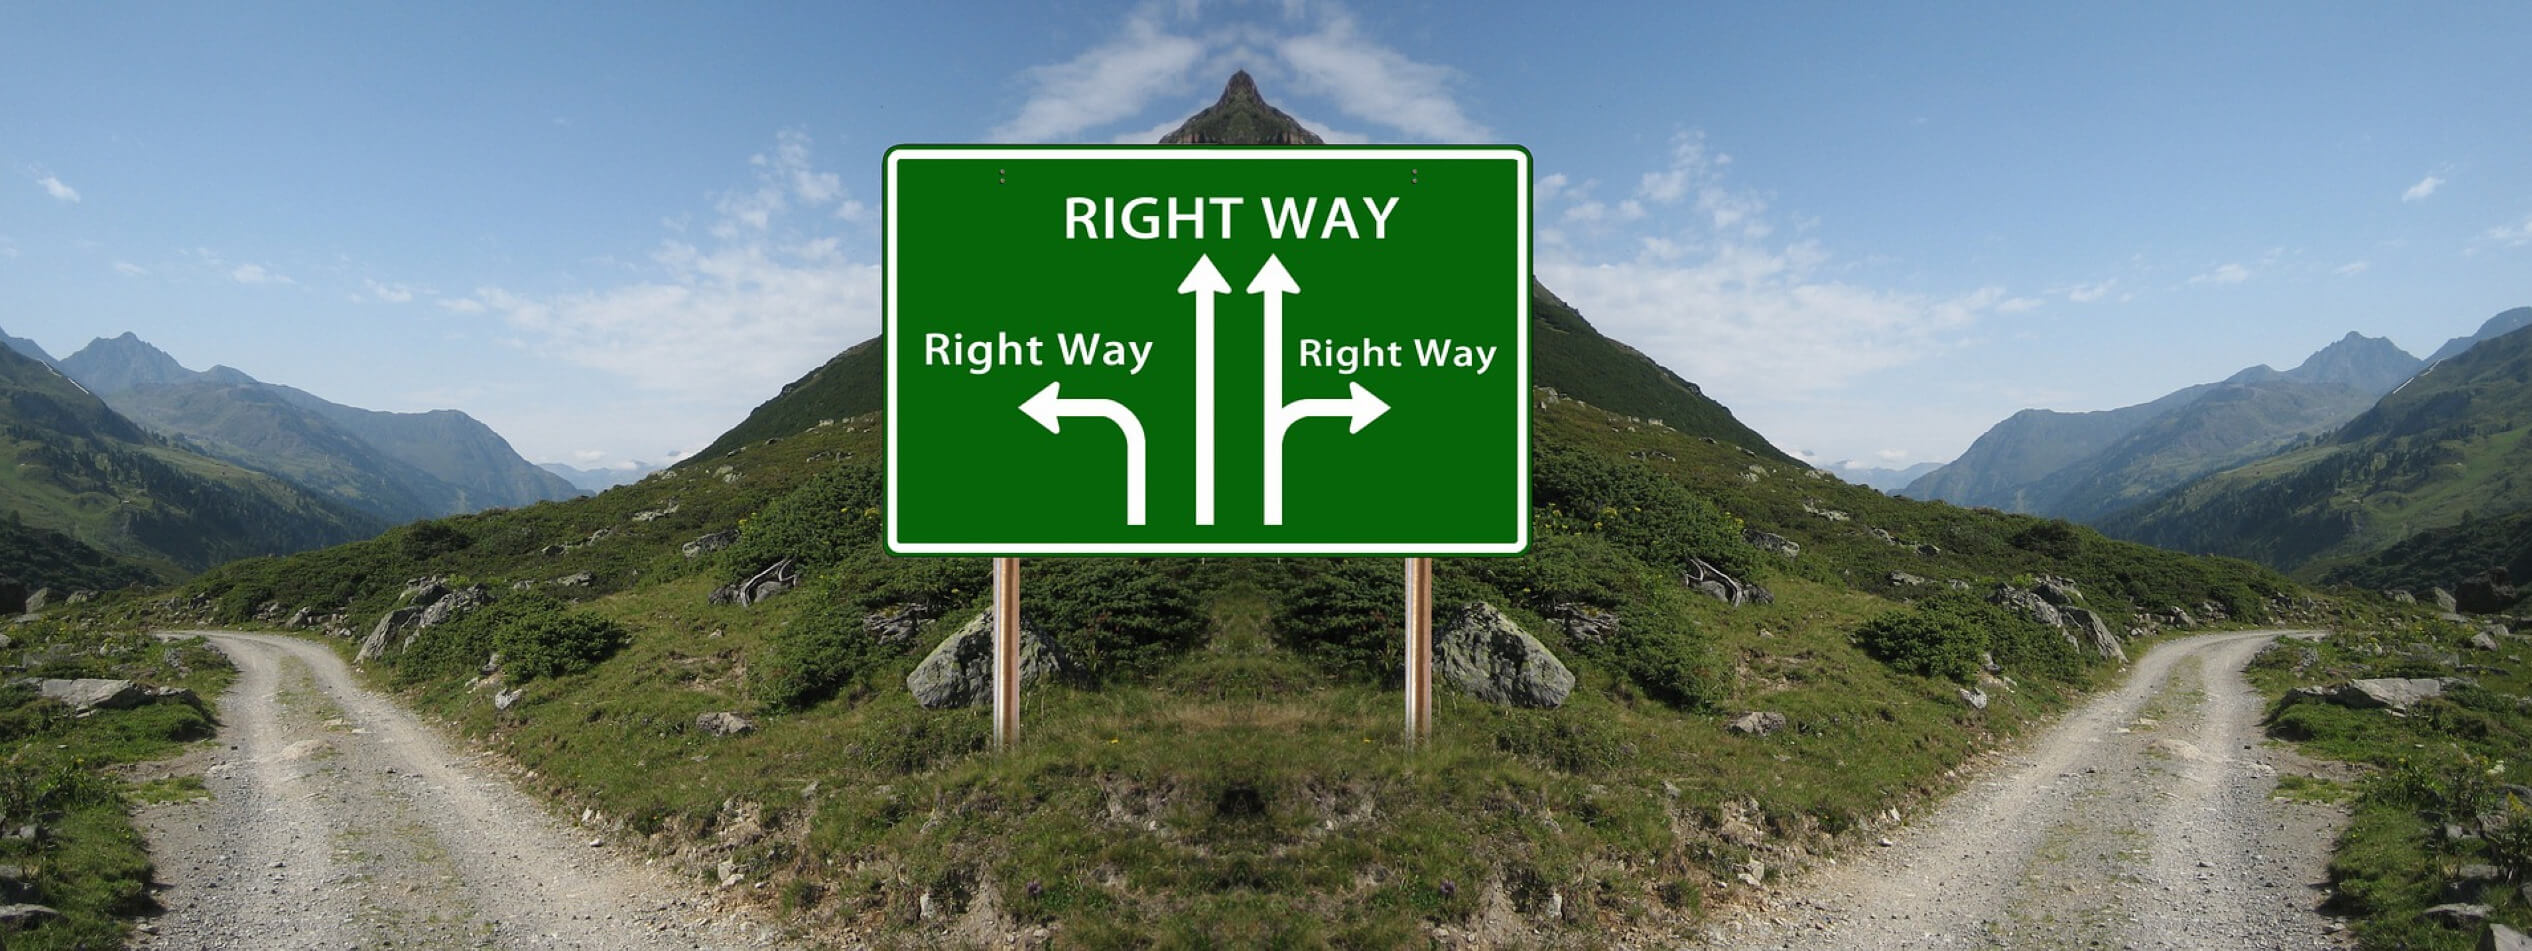 Right way pixabay